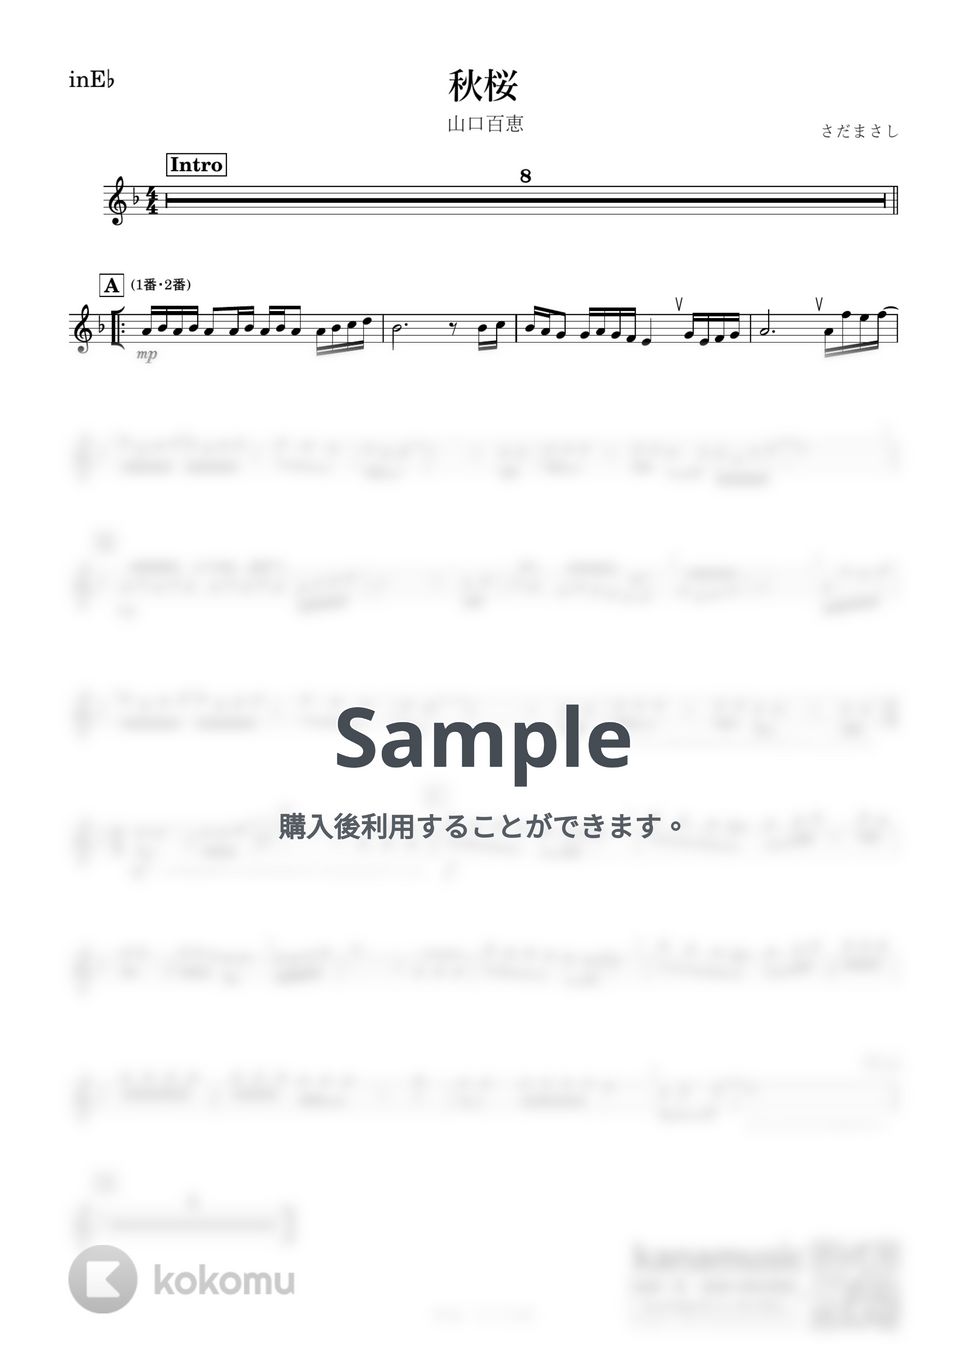 山口百恵 - 秋桜 (E♭) by kanamusic